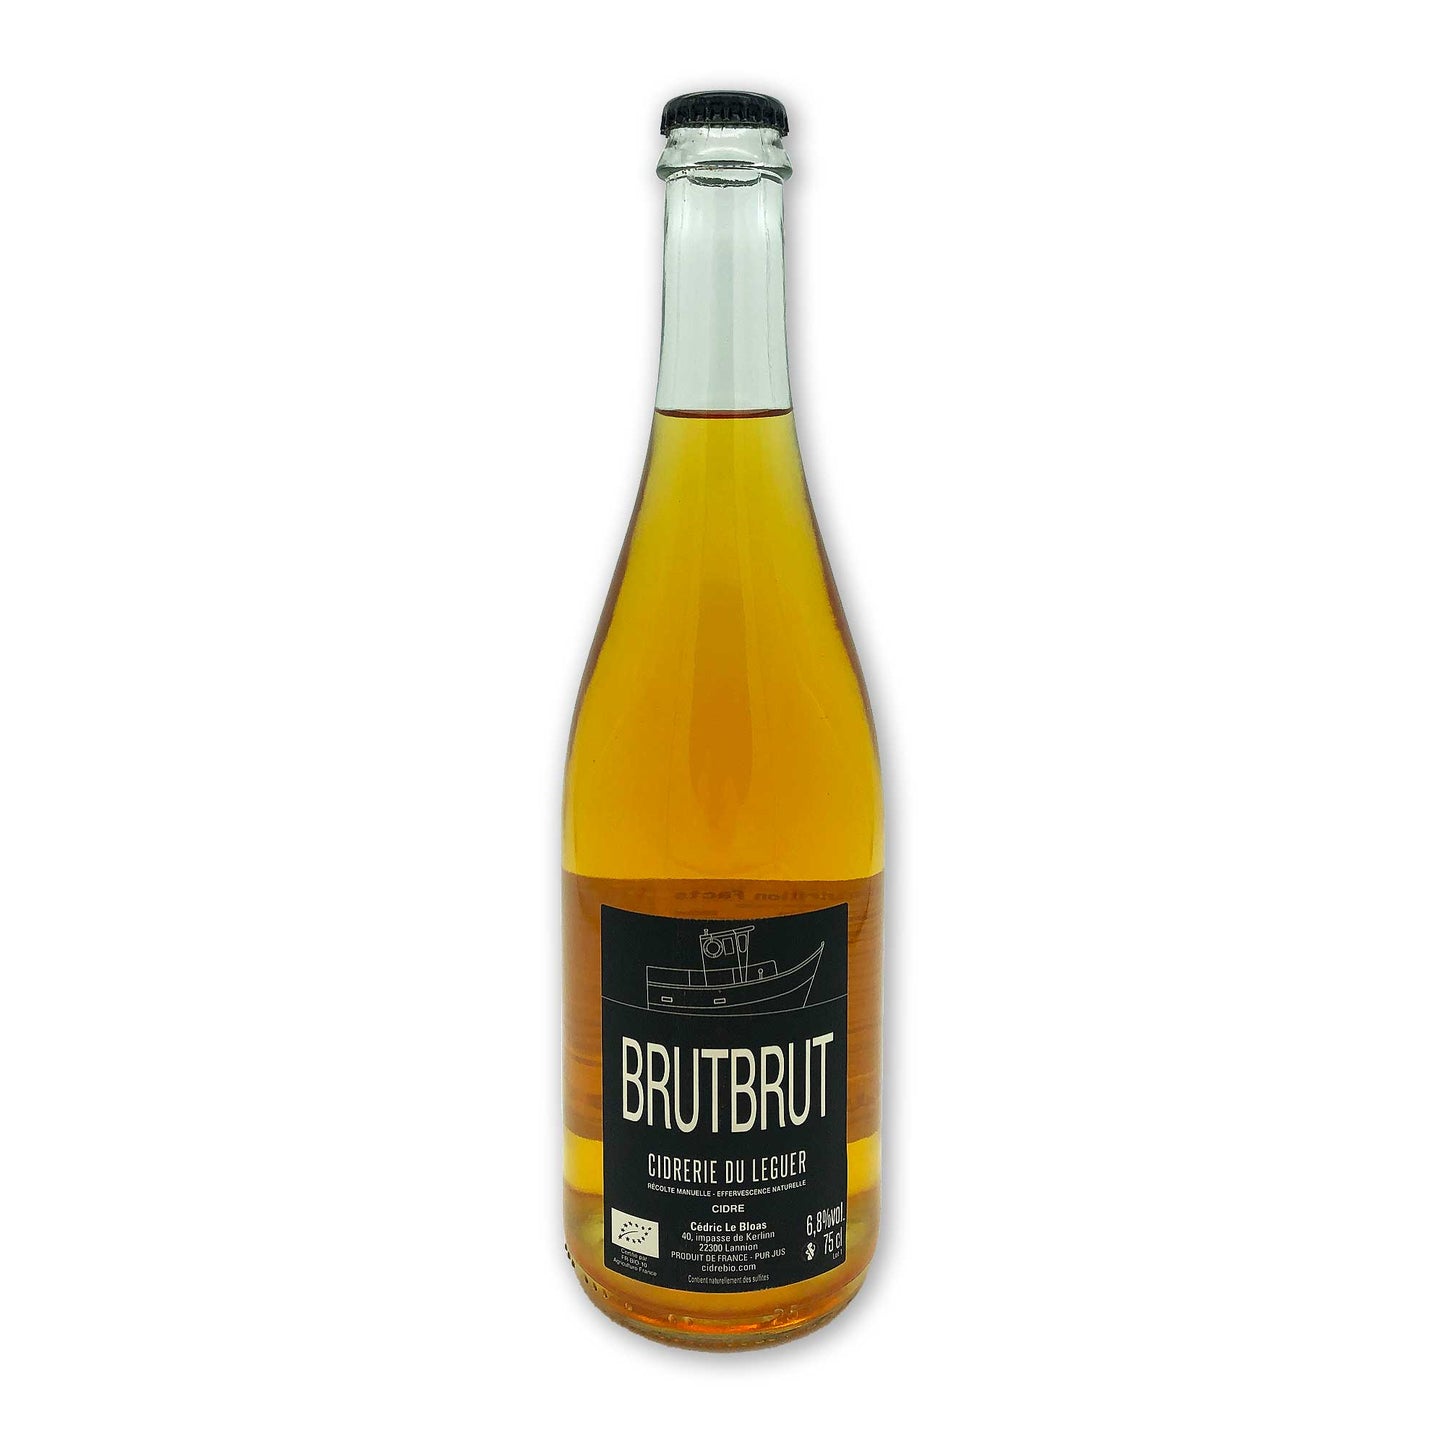 Brutbrut - Cidre du Leguer - Brittany